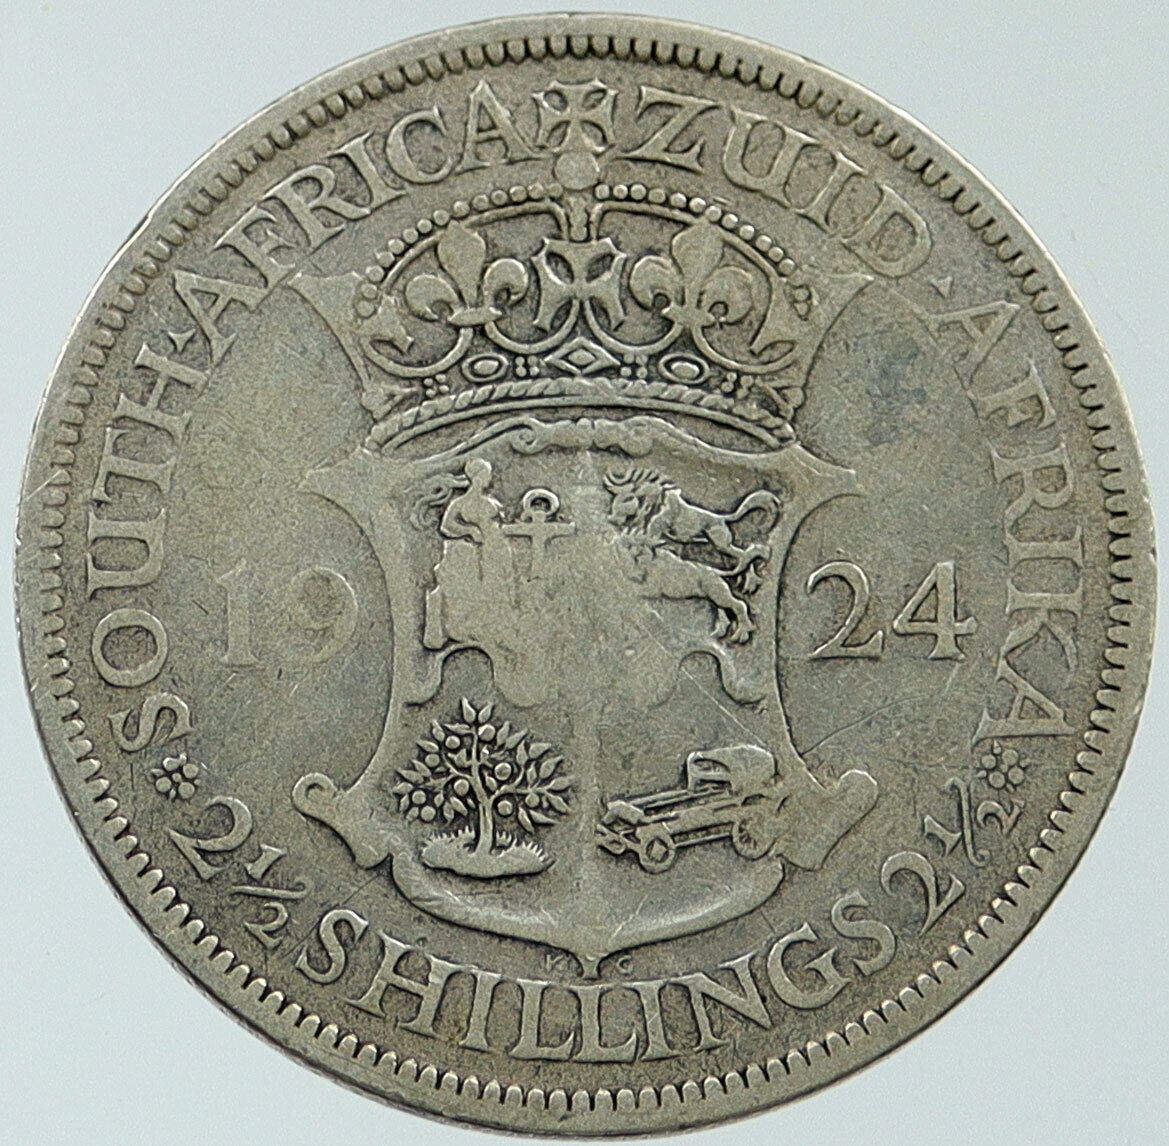 1924 SOUTH AFRICA under UK King GEORGE V Vintage OLD Silver Florin Coin i116800